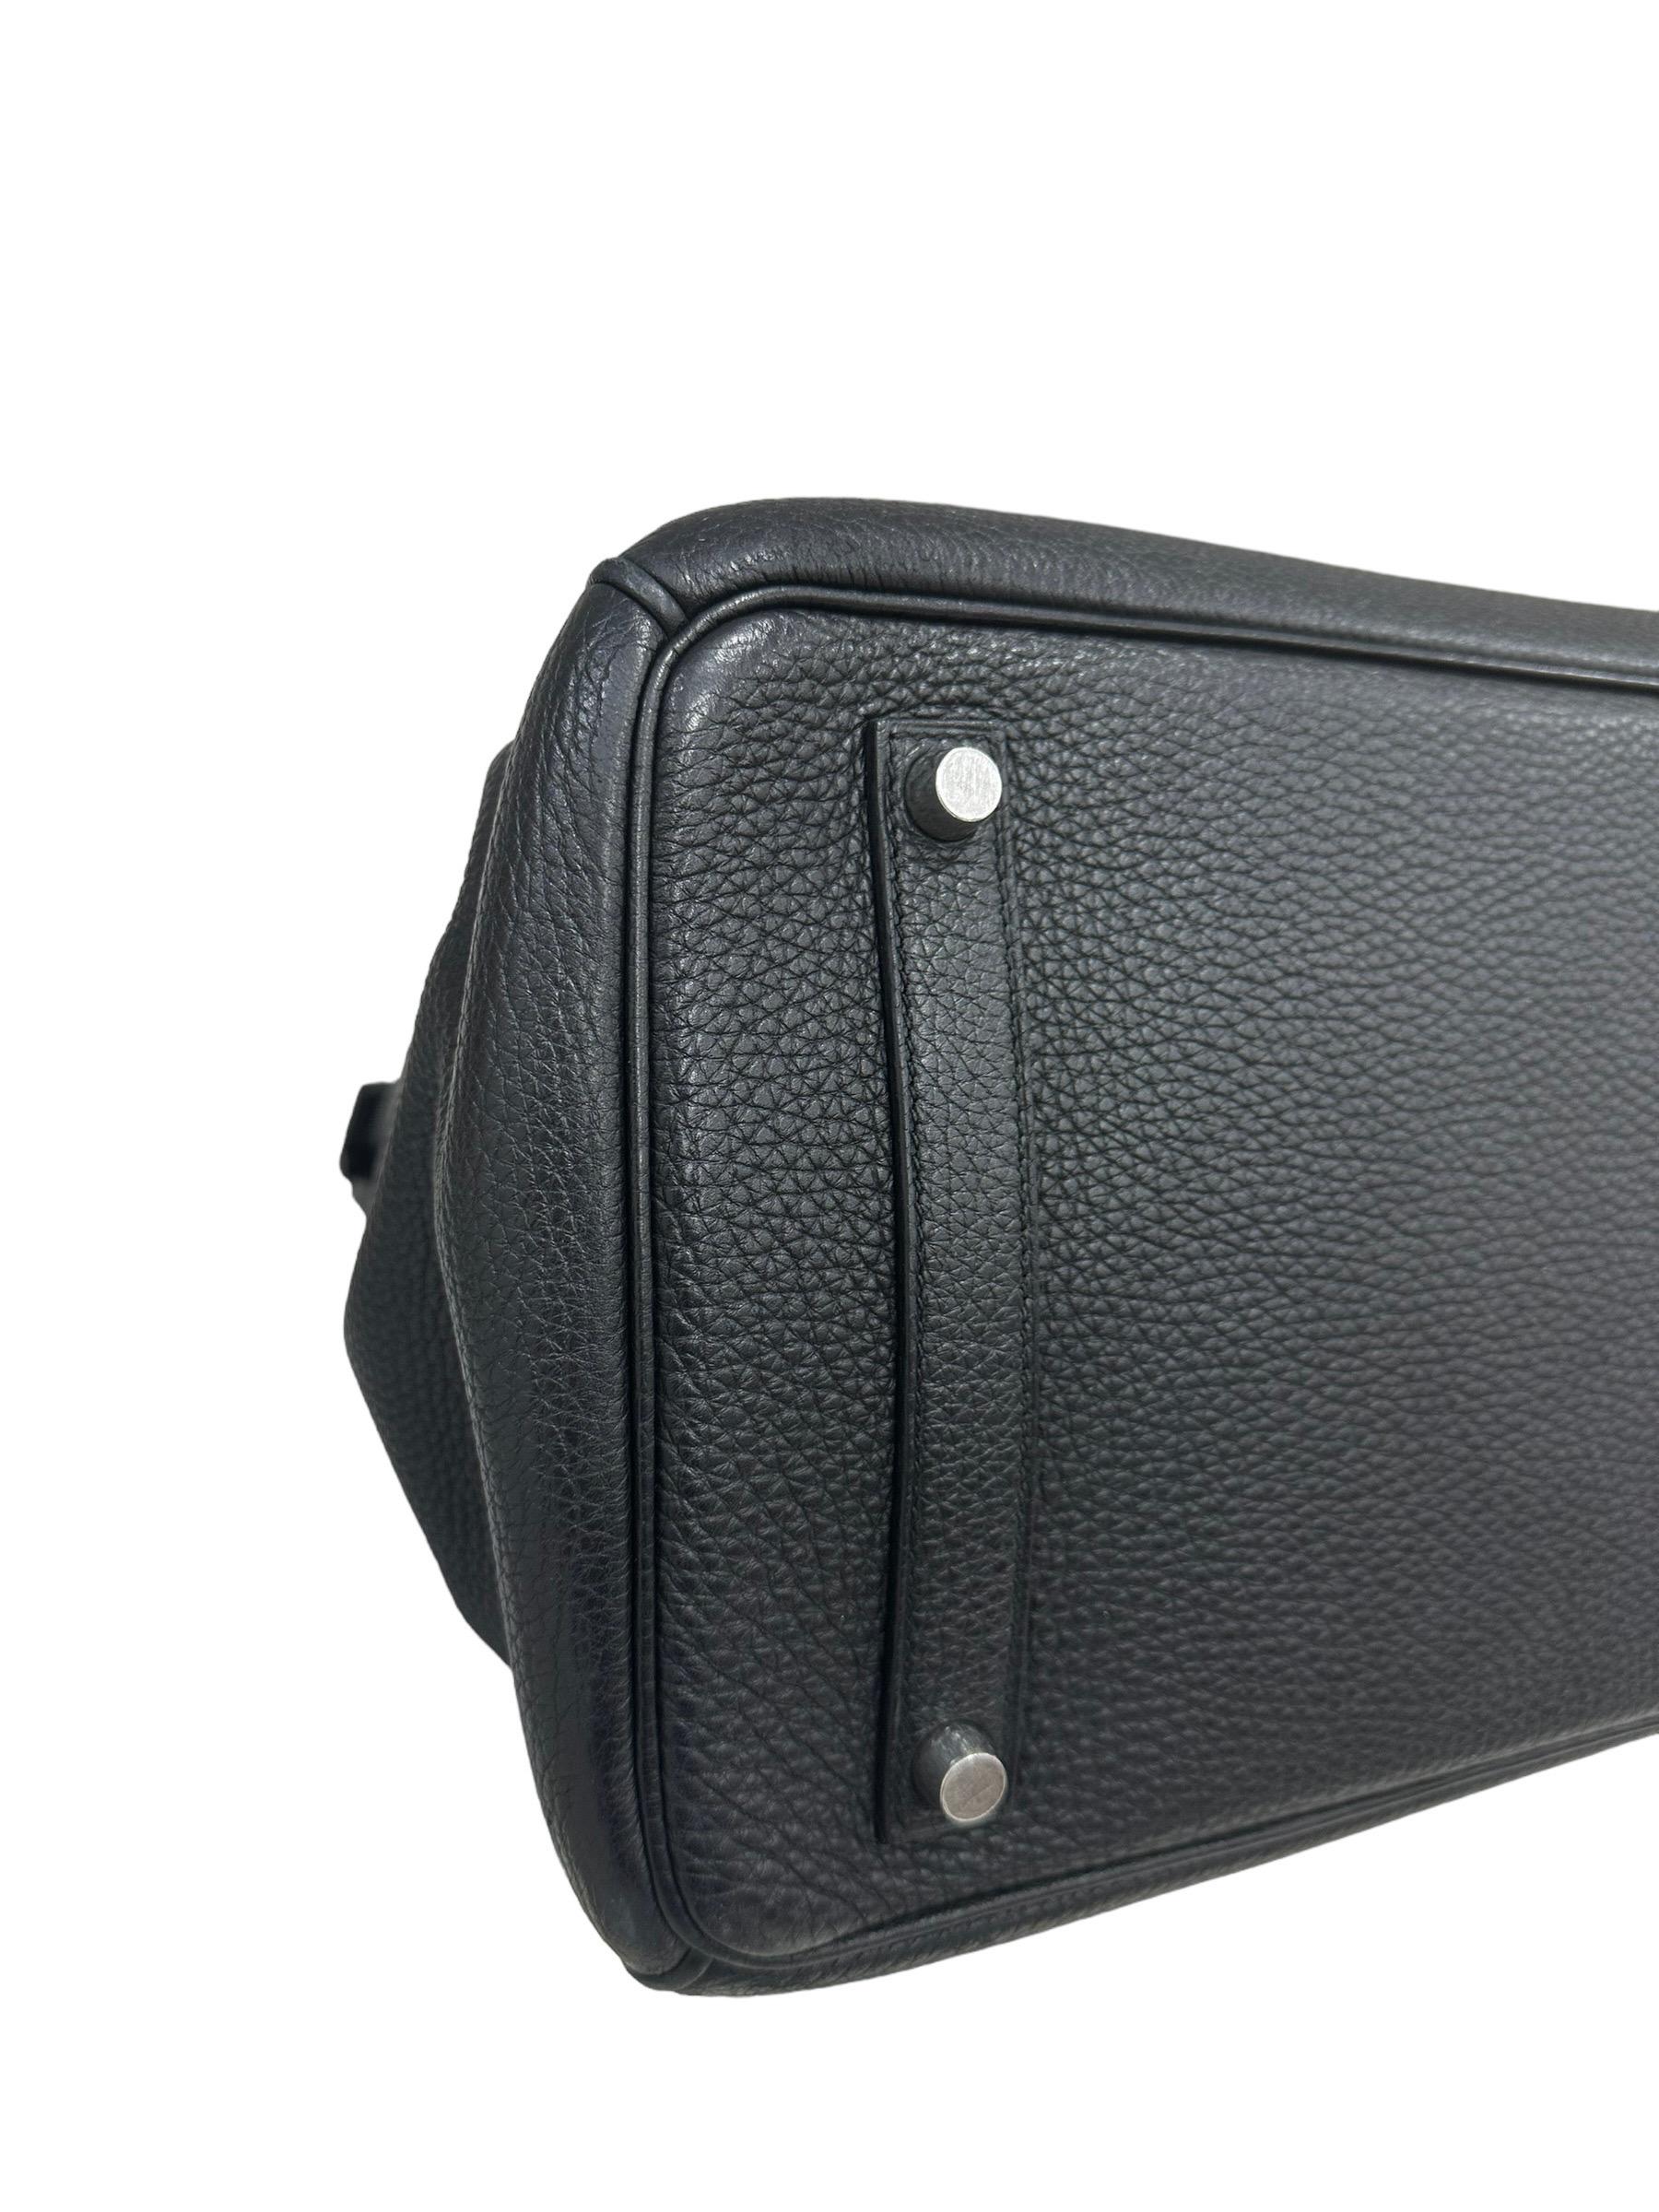 2007 Hermès Birkin Bag Togo Leather Plomb Top Handle Bag For Sale 8